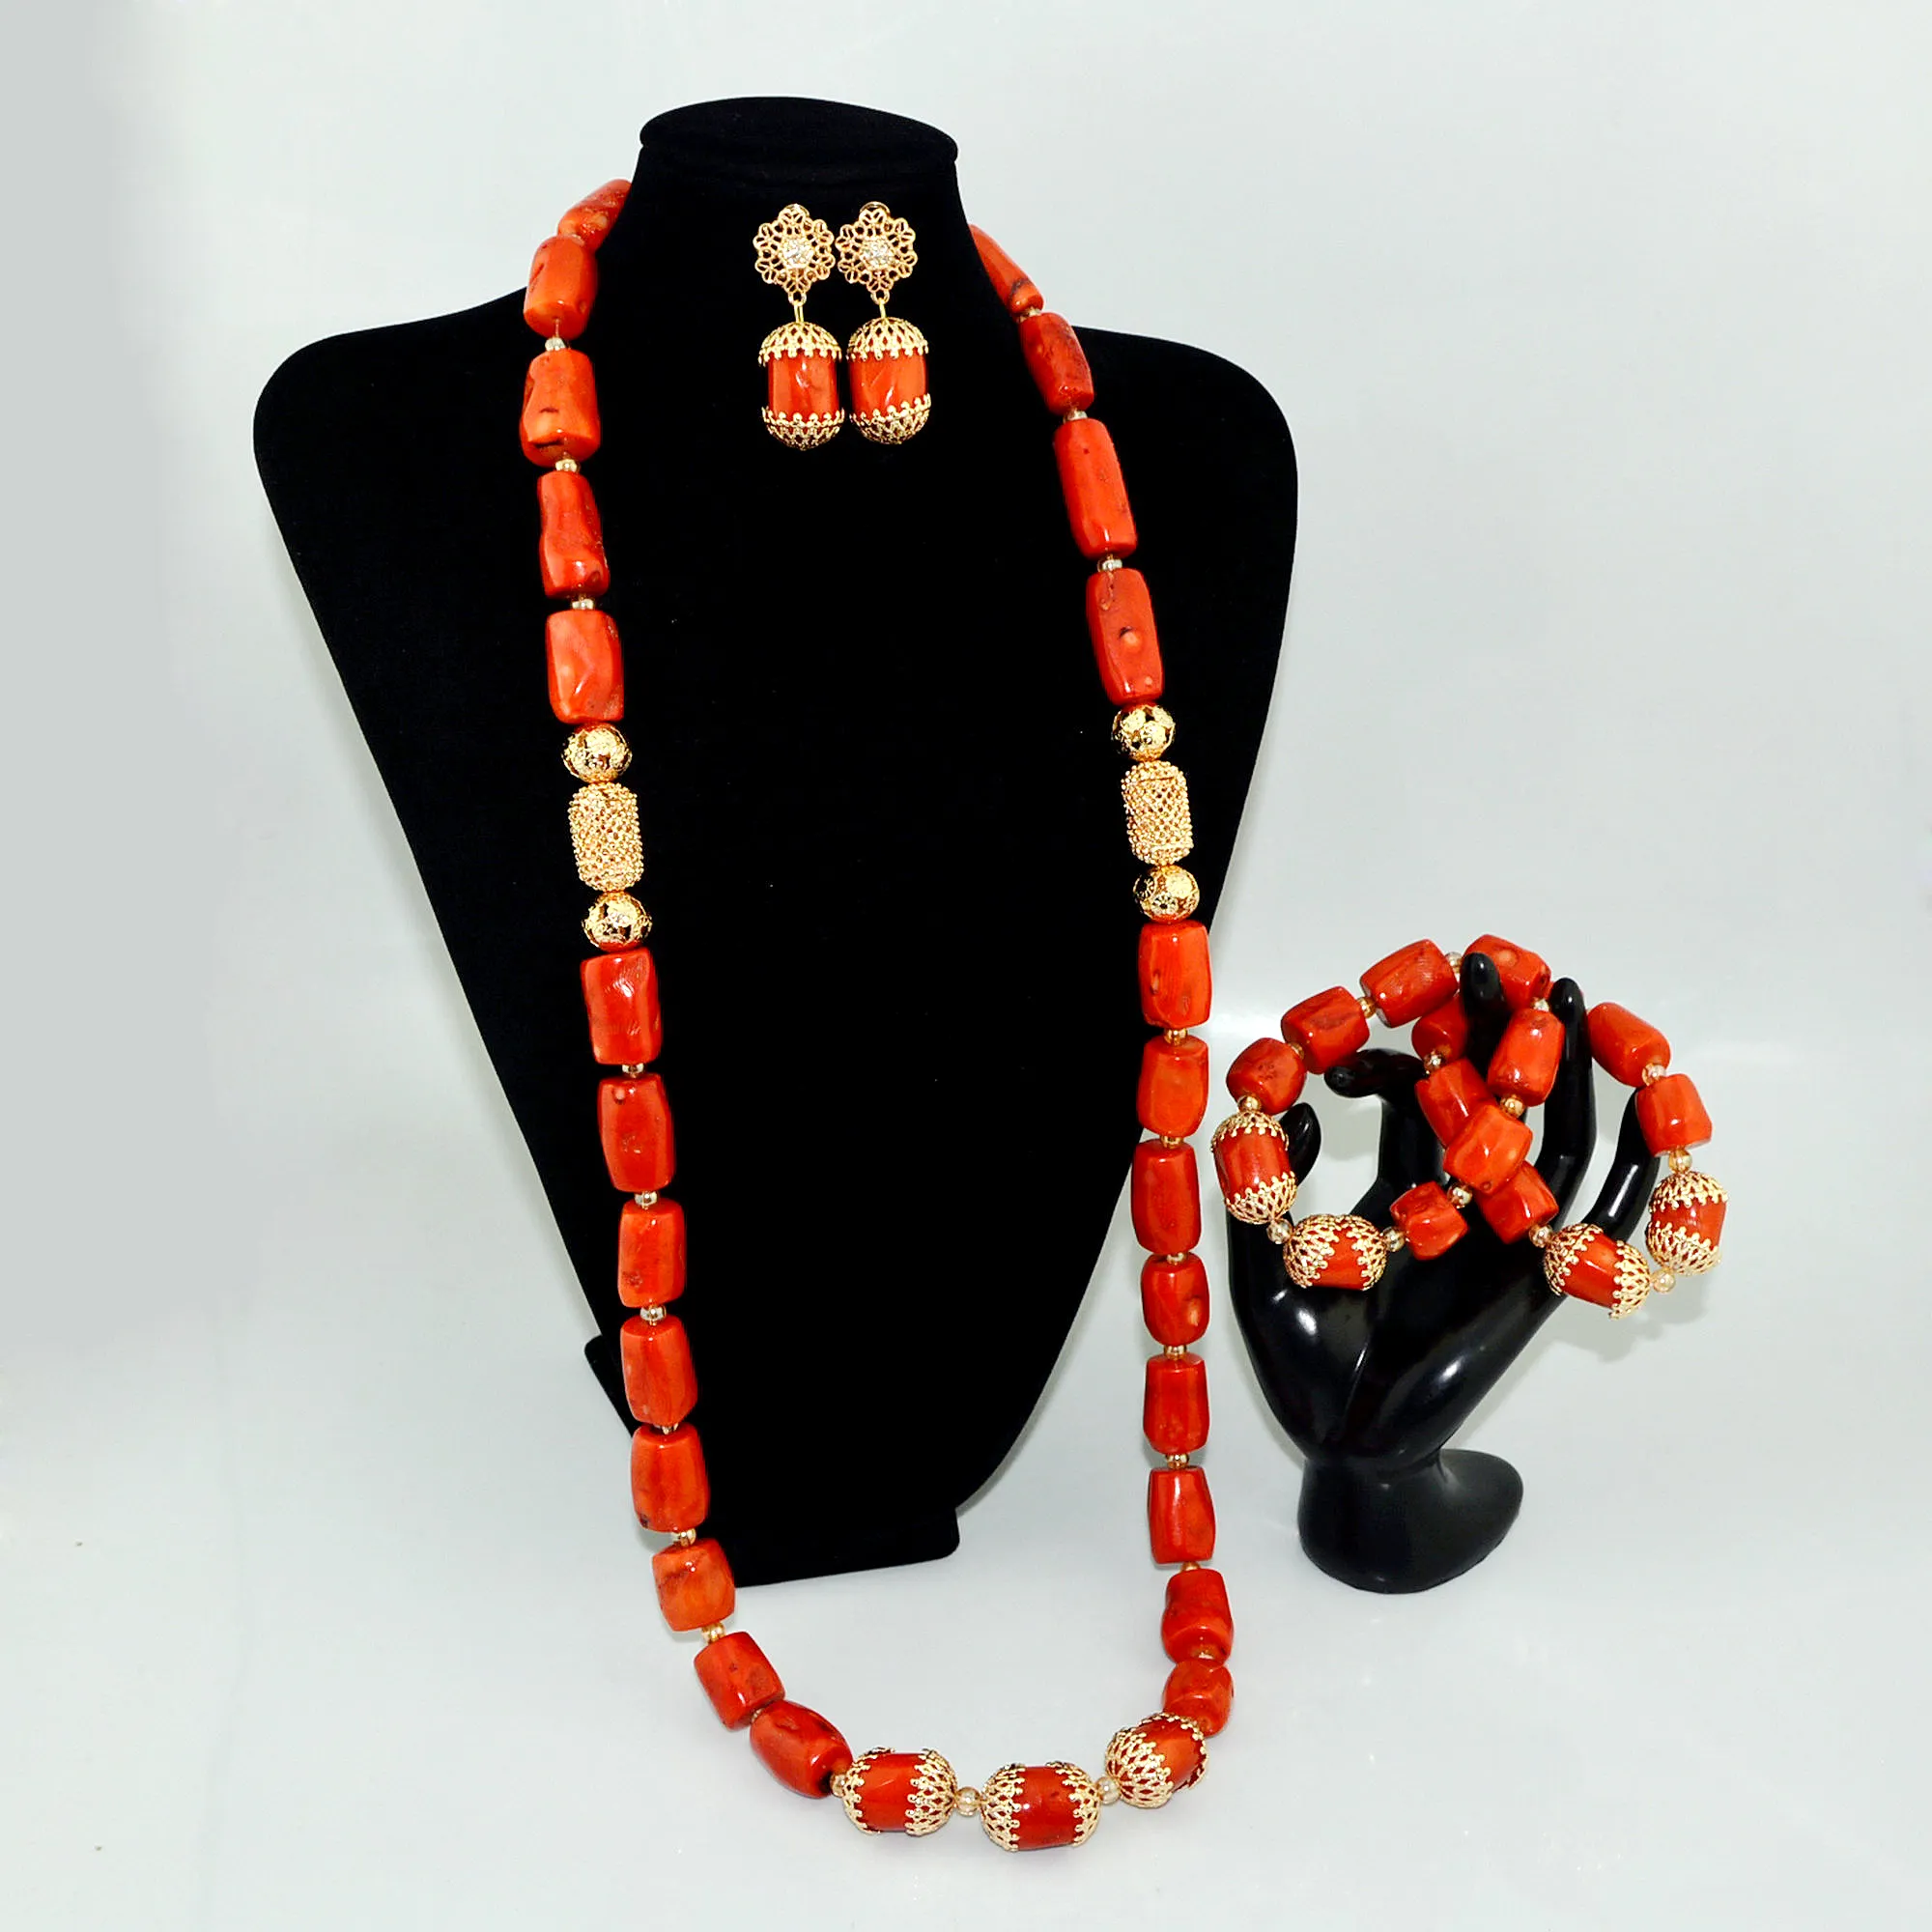 아프리카 스타일 쥬얼리 비즈 새로운 도착 산호 비즈 목걸이 귀걸이 세트 2019 나이지리아 디자인